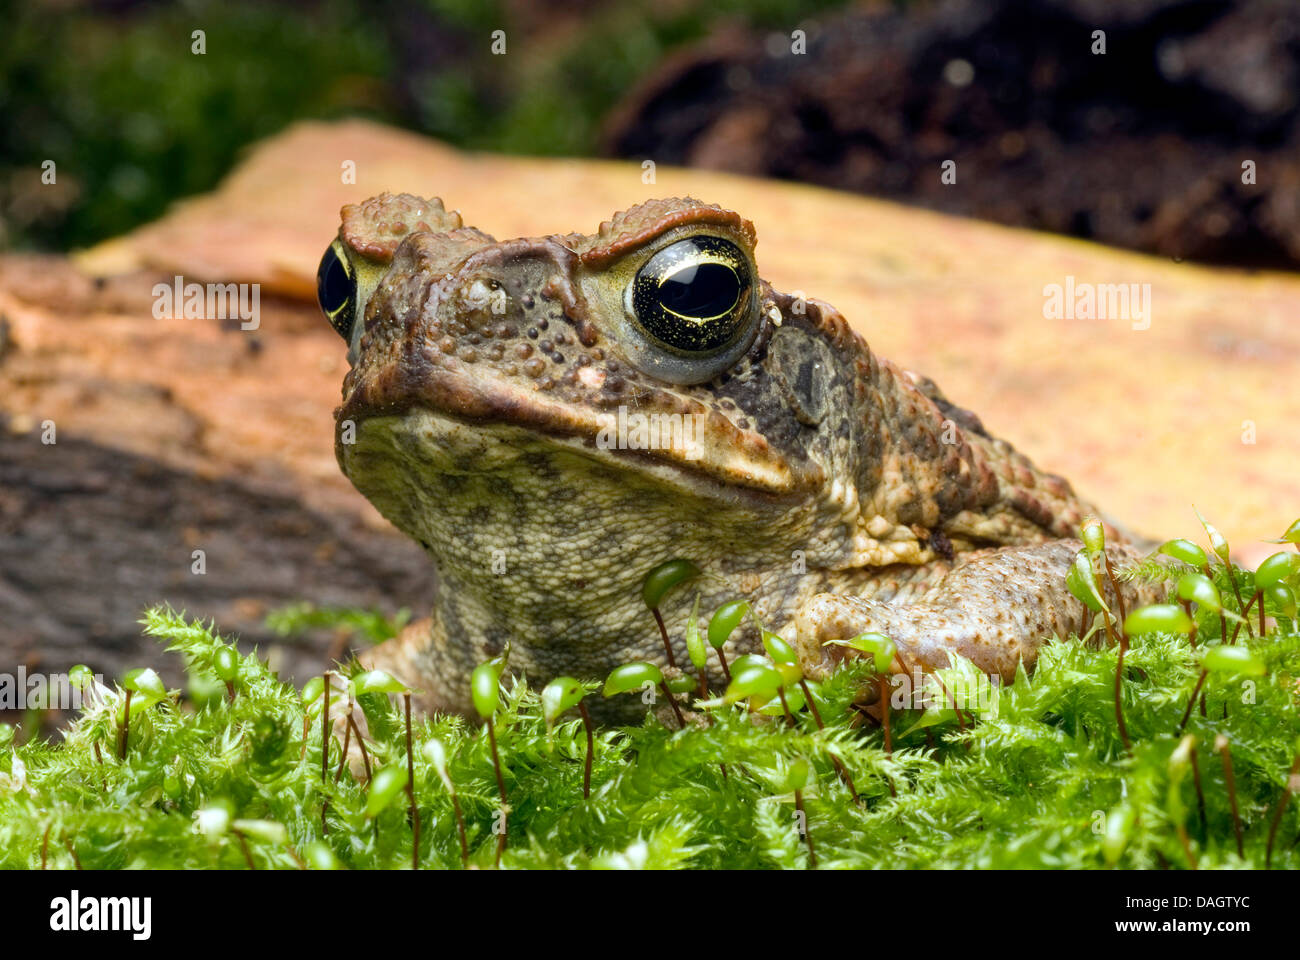 Il rospo gigante, Marine, il Rospo Rospo di canna, sud americana Neotropical toad (Bufo marinus, Rhinella marina), ritratto Foto Stock